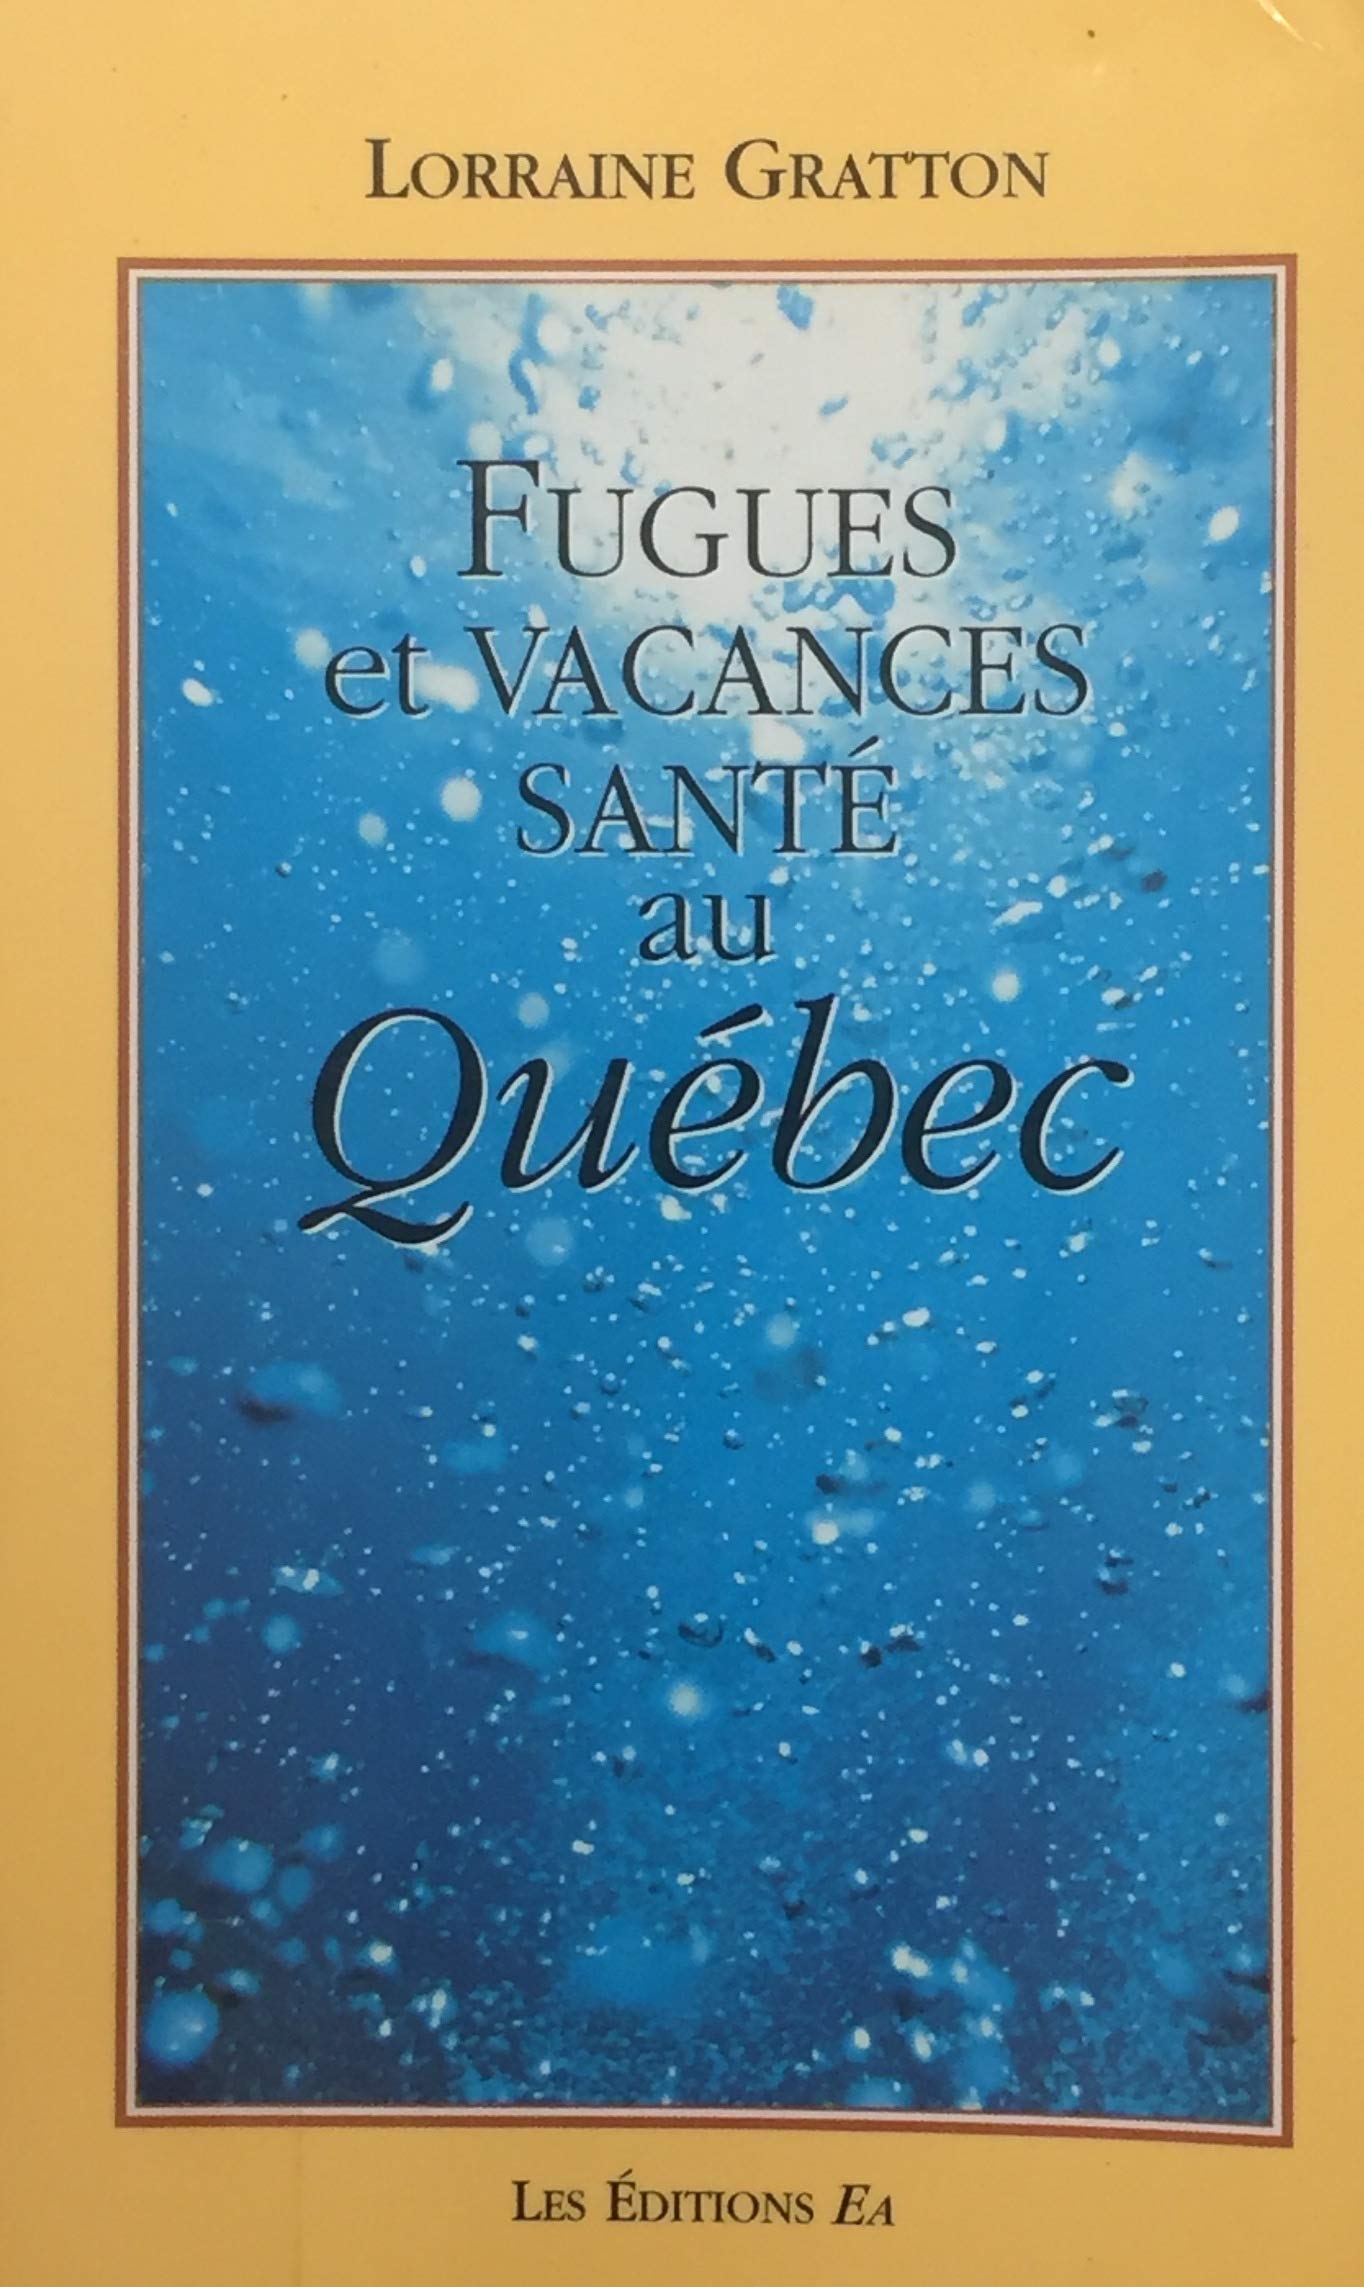 Livre ISBN 2980546208 Fugues et vacances santé au Québec (Lorraine Gratton)